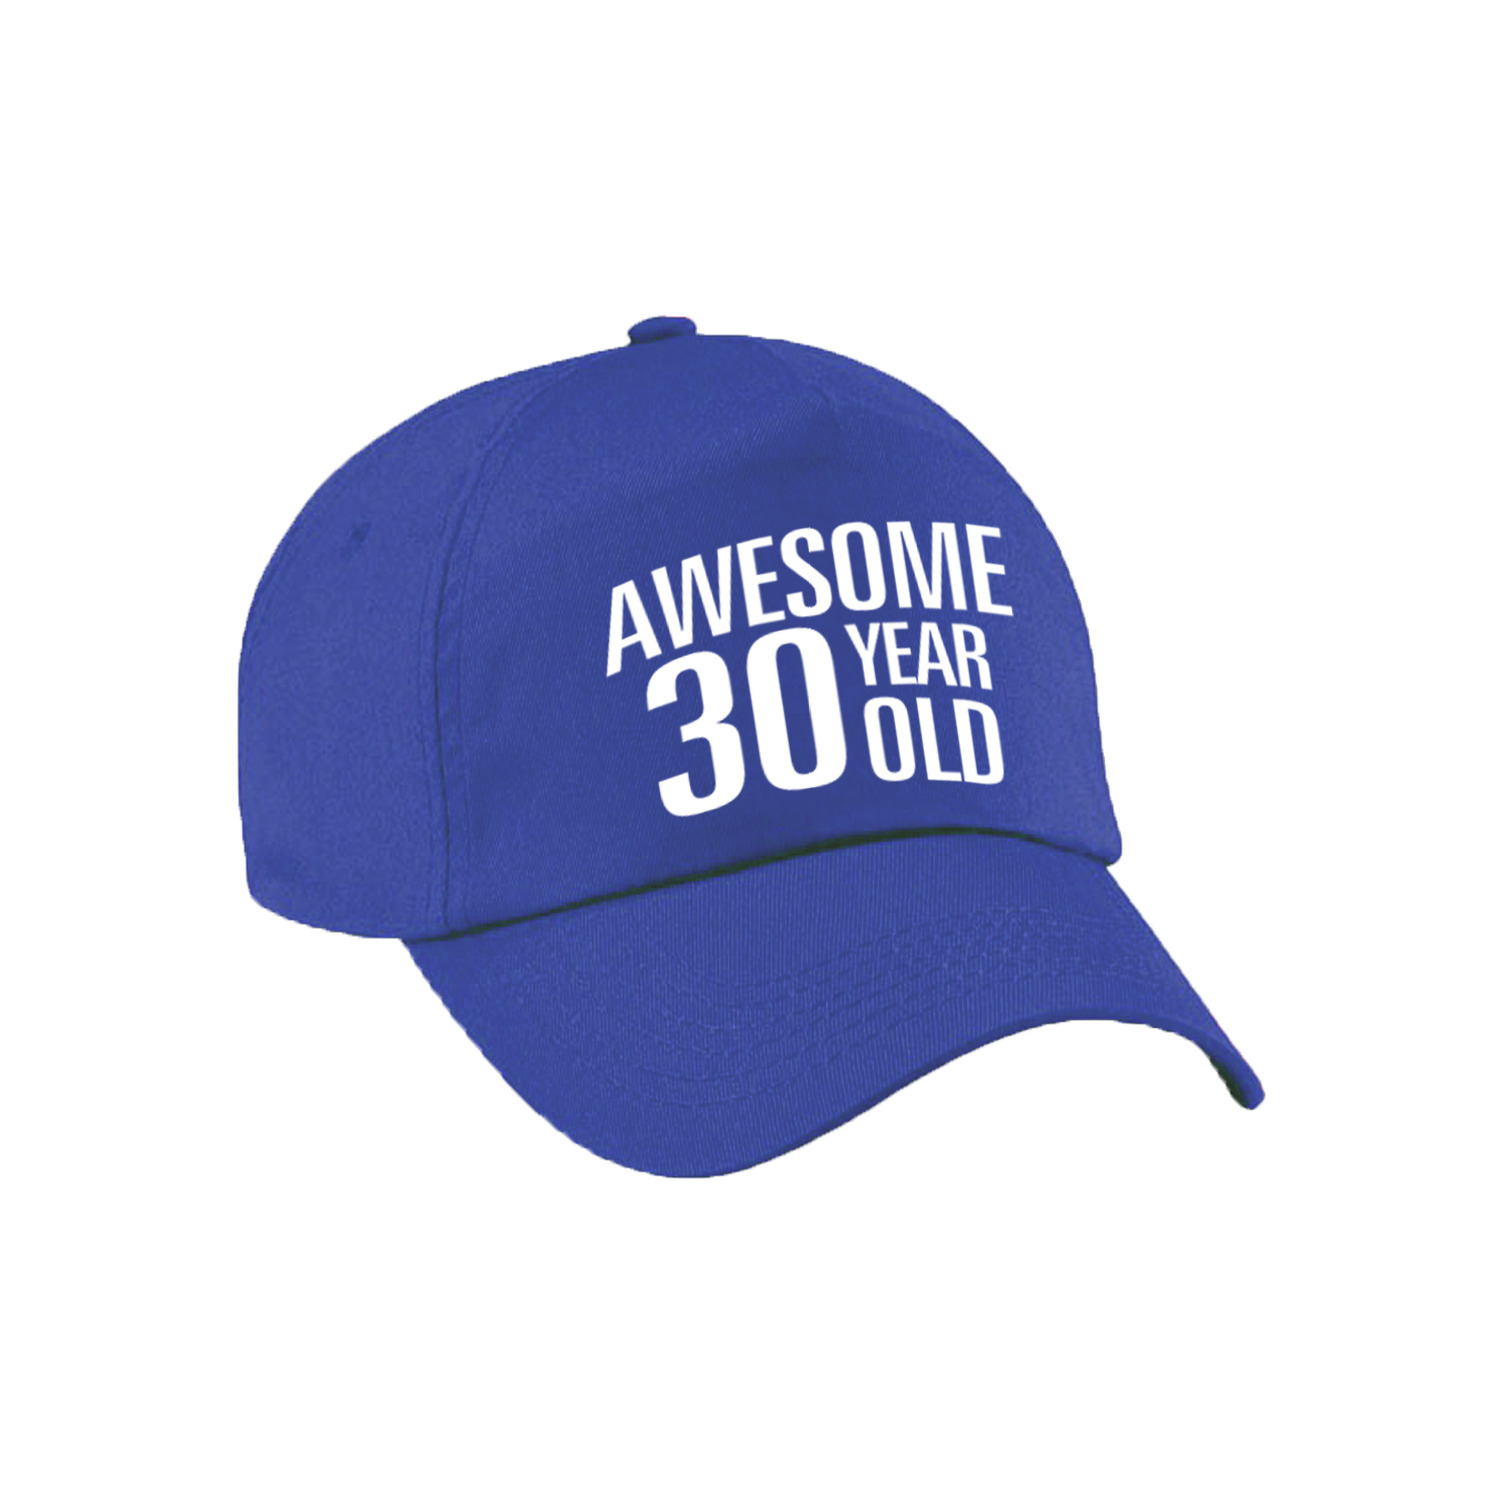 Awesome 30 year old verjaardag pet / cap blauw voor dames en heren